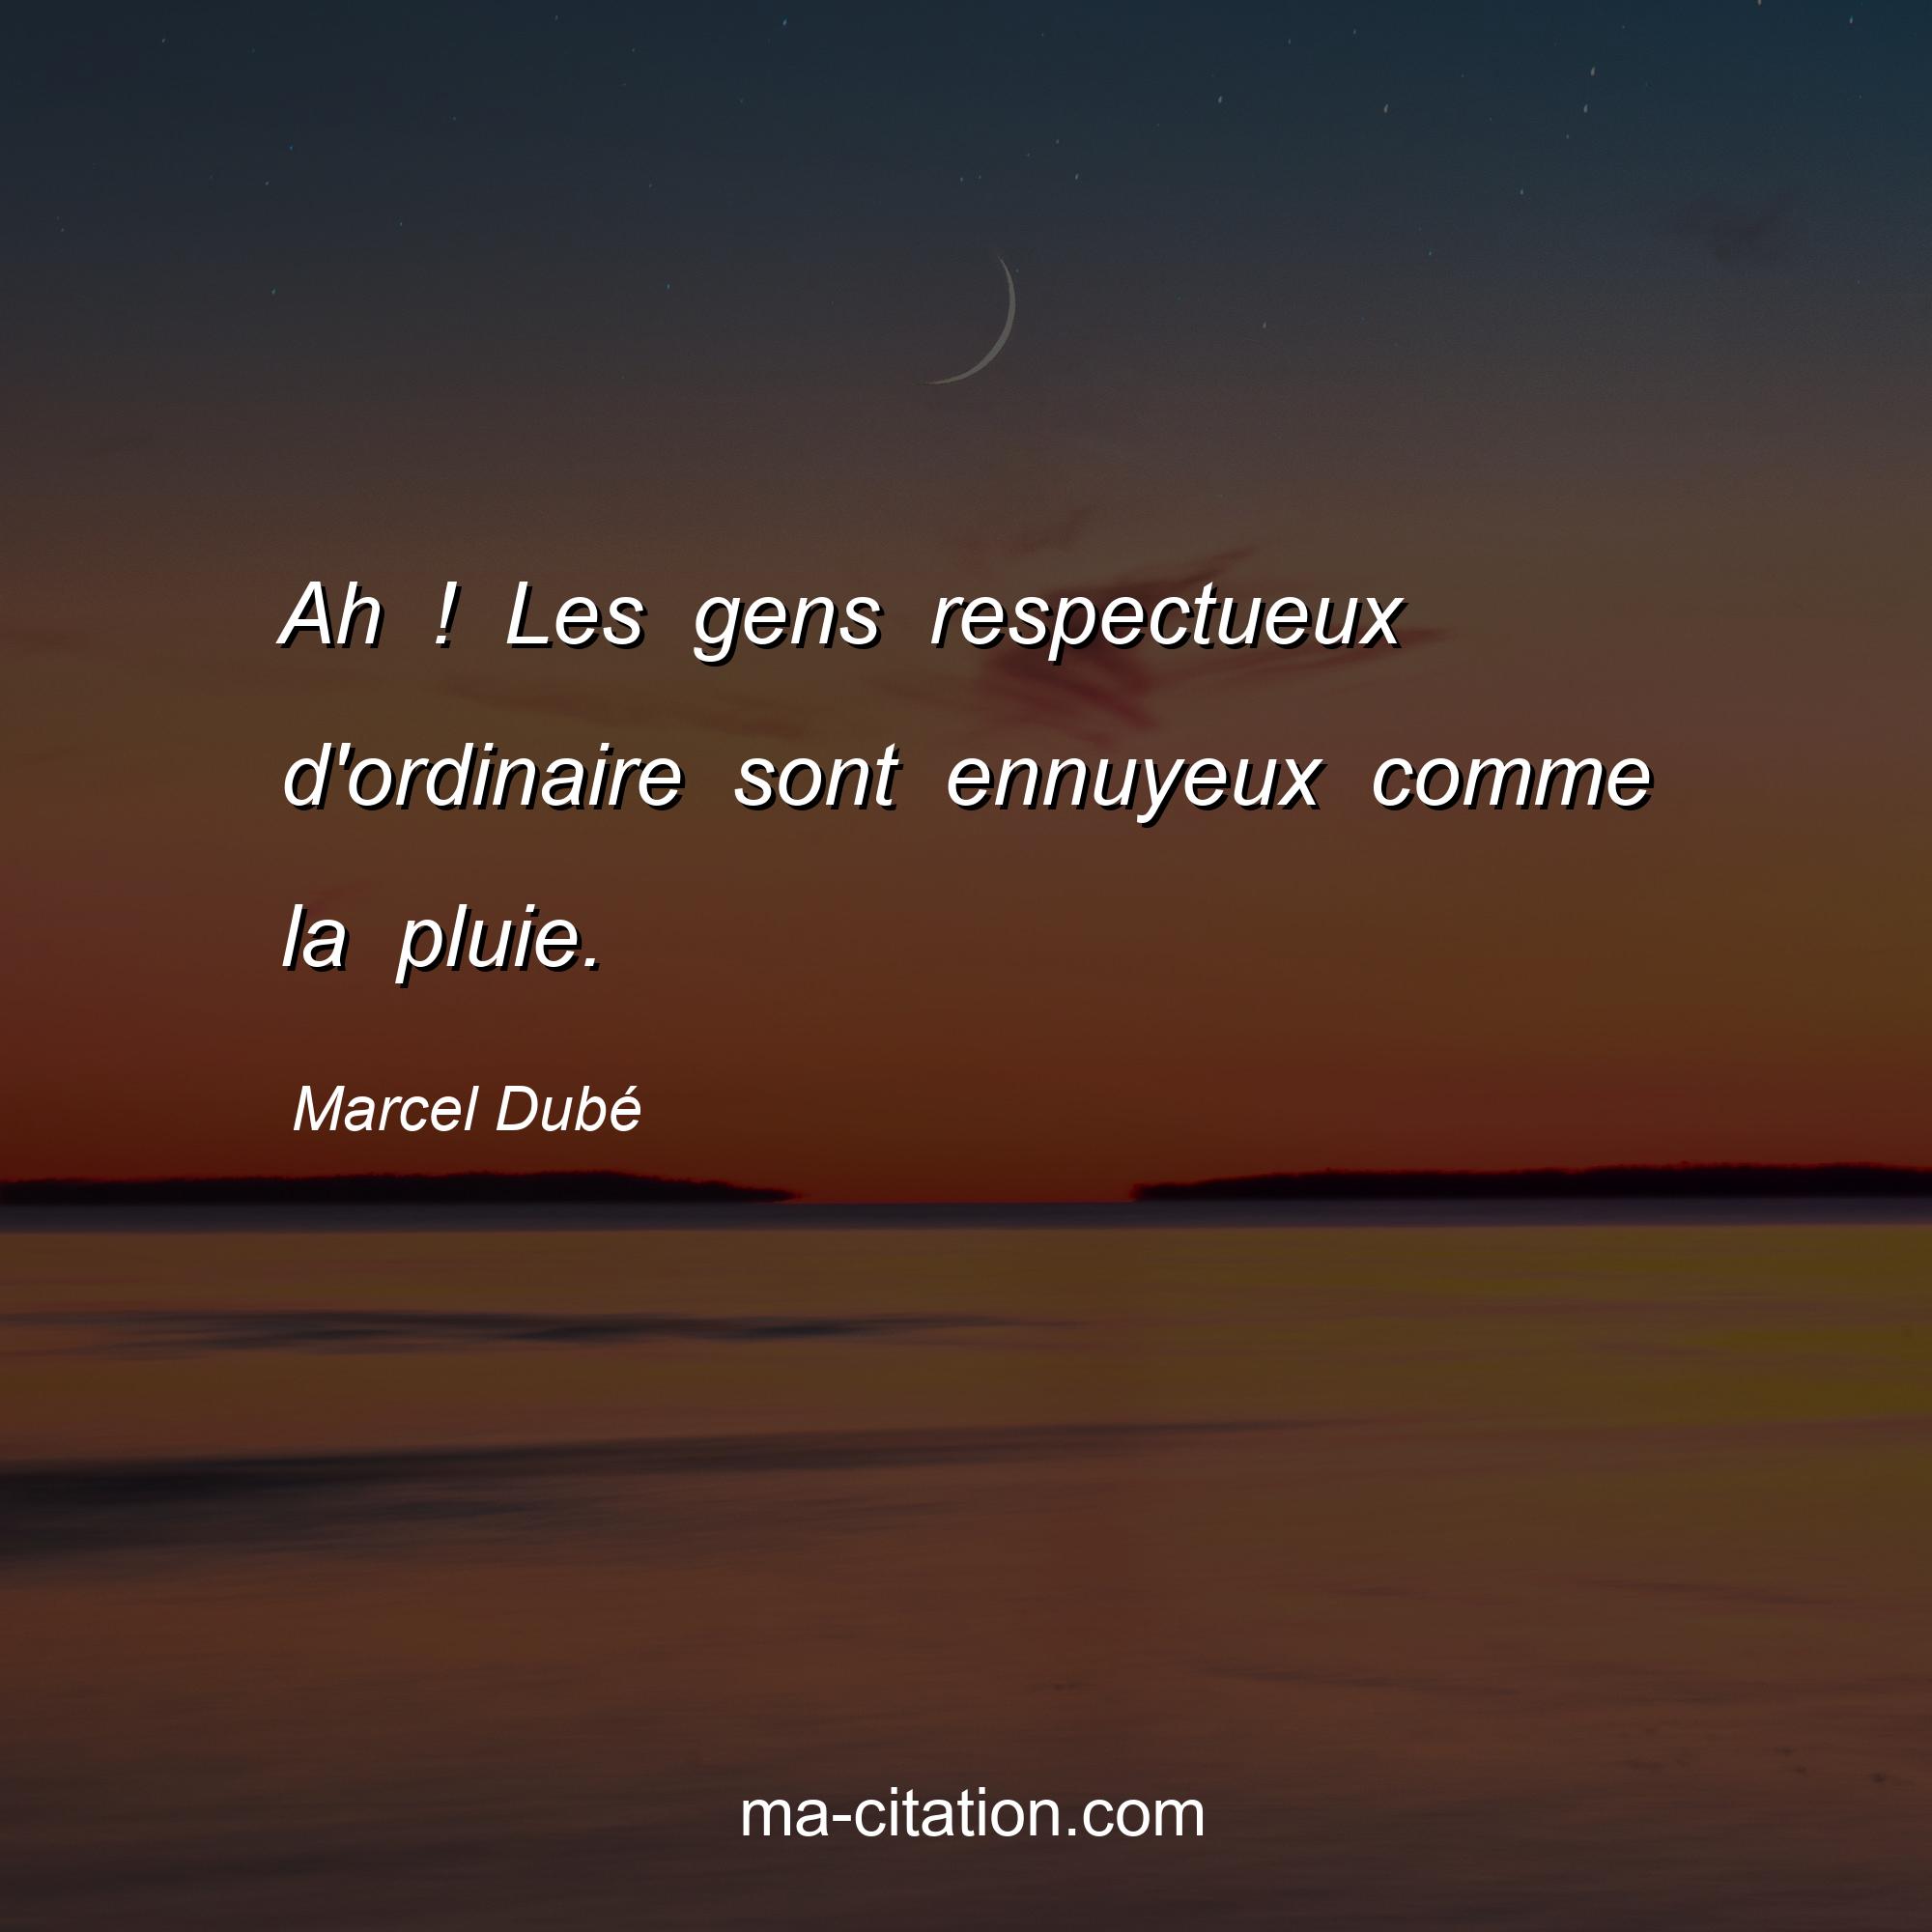 Marcel Dubé : Ah ! Les gens respectueux d'ordinaire sont ennuyeux comme la pluie.